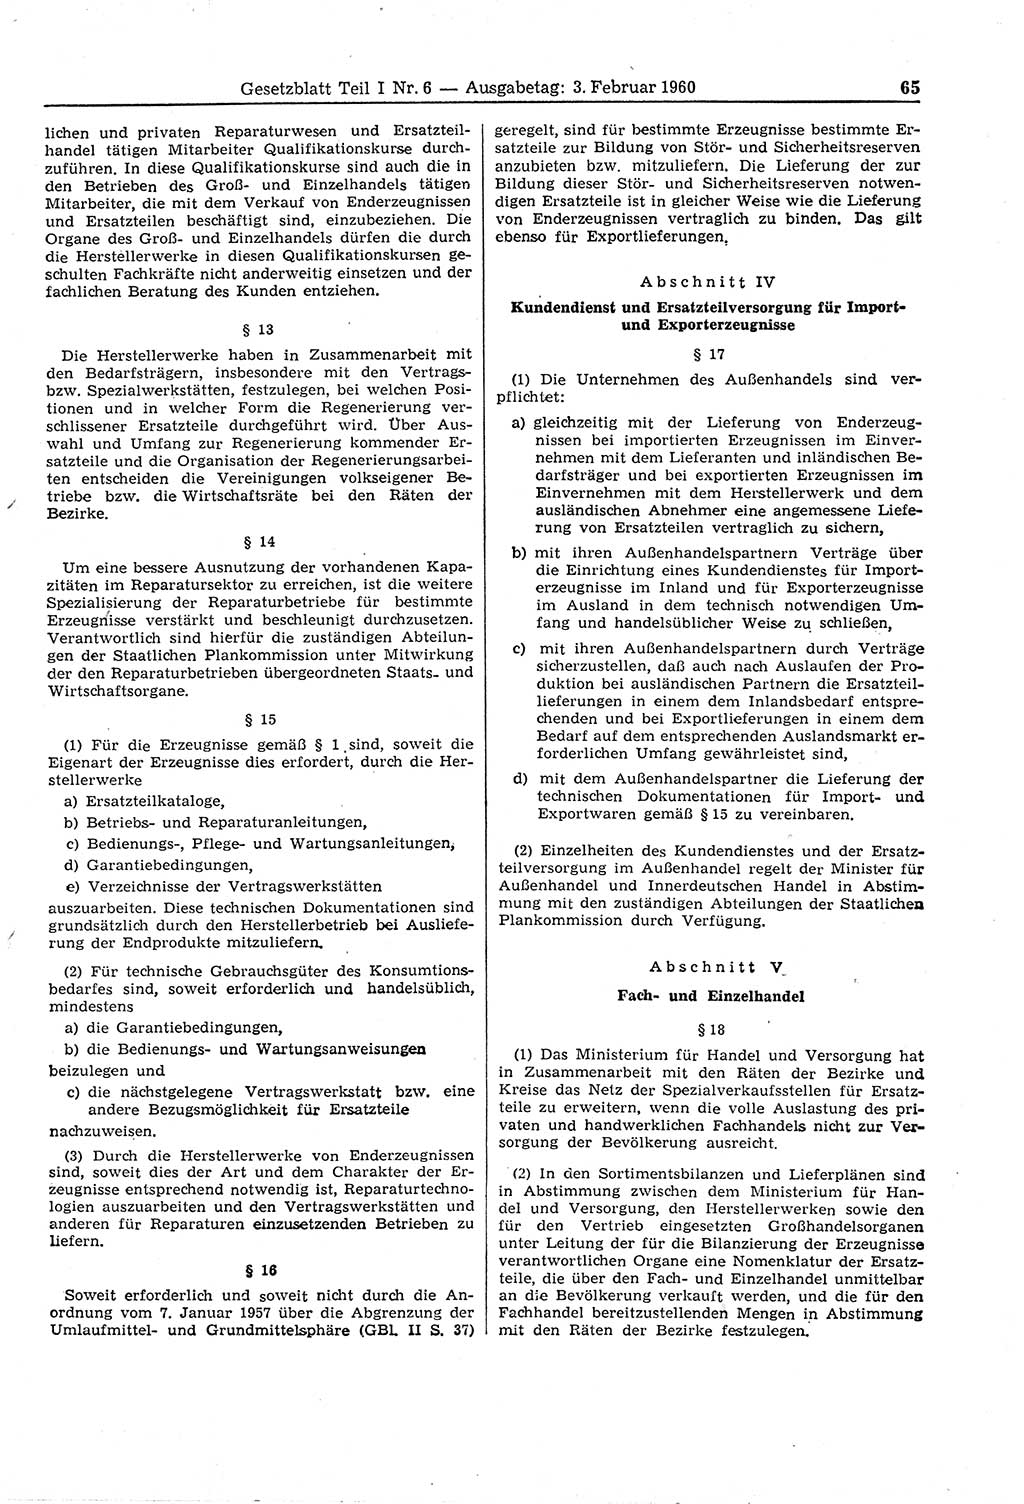 Gesetzblatt (GBl.) der Deutschen Demokratischen Republik (DDR) Teil Ⅰ 1960, Seite 65 (GBl. DDR Ⅰ 1960, S. 65)